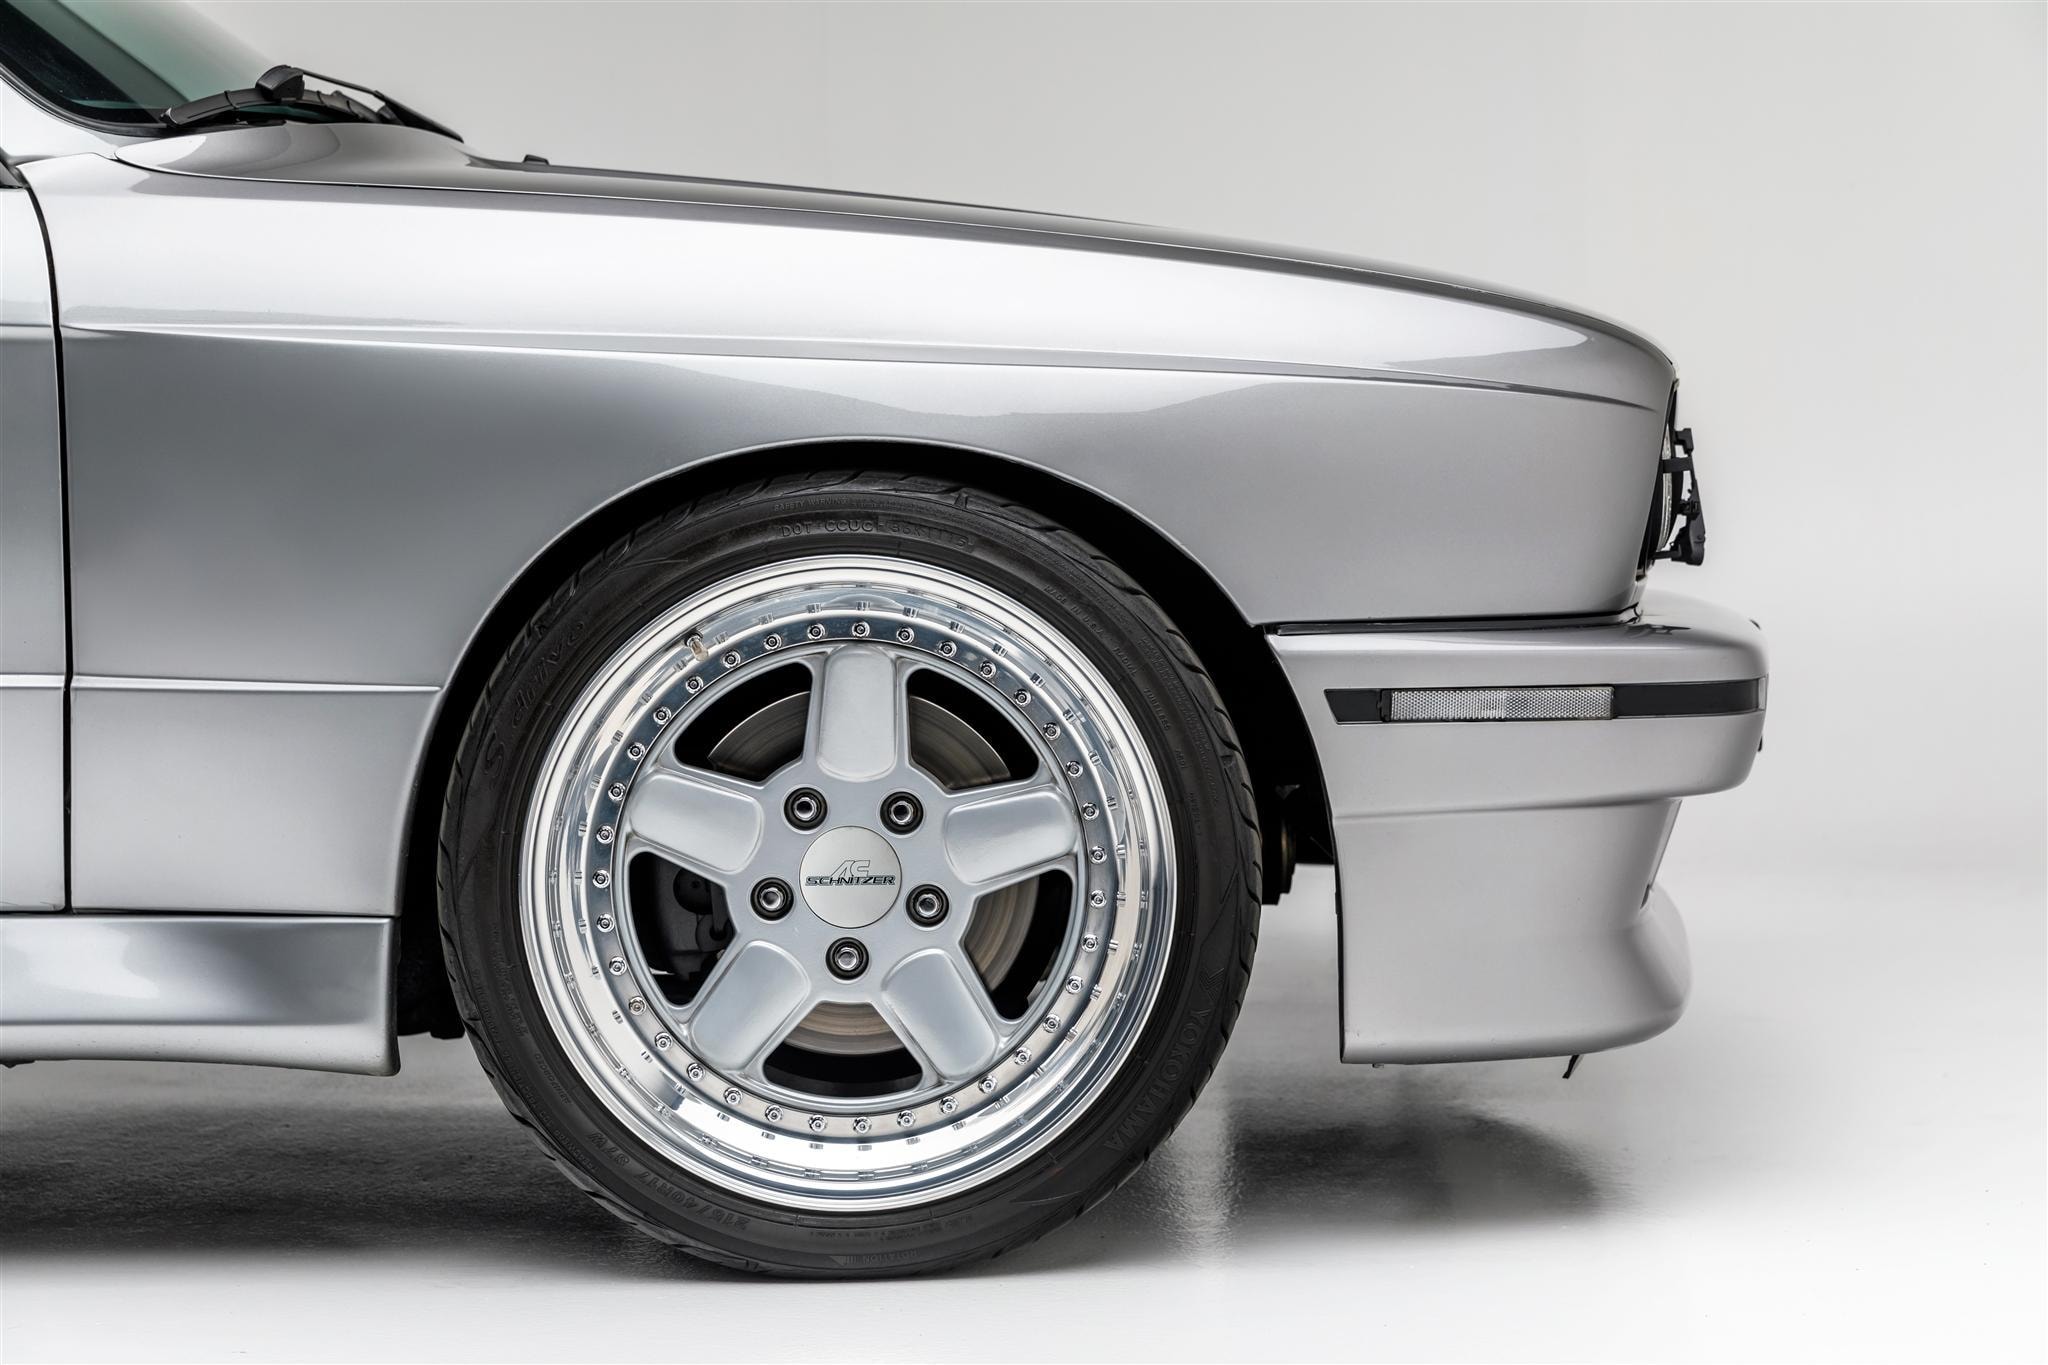 1988 年 BMW E30 M3 改裝車款以超過 $50,000 美元高價拍賣